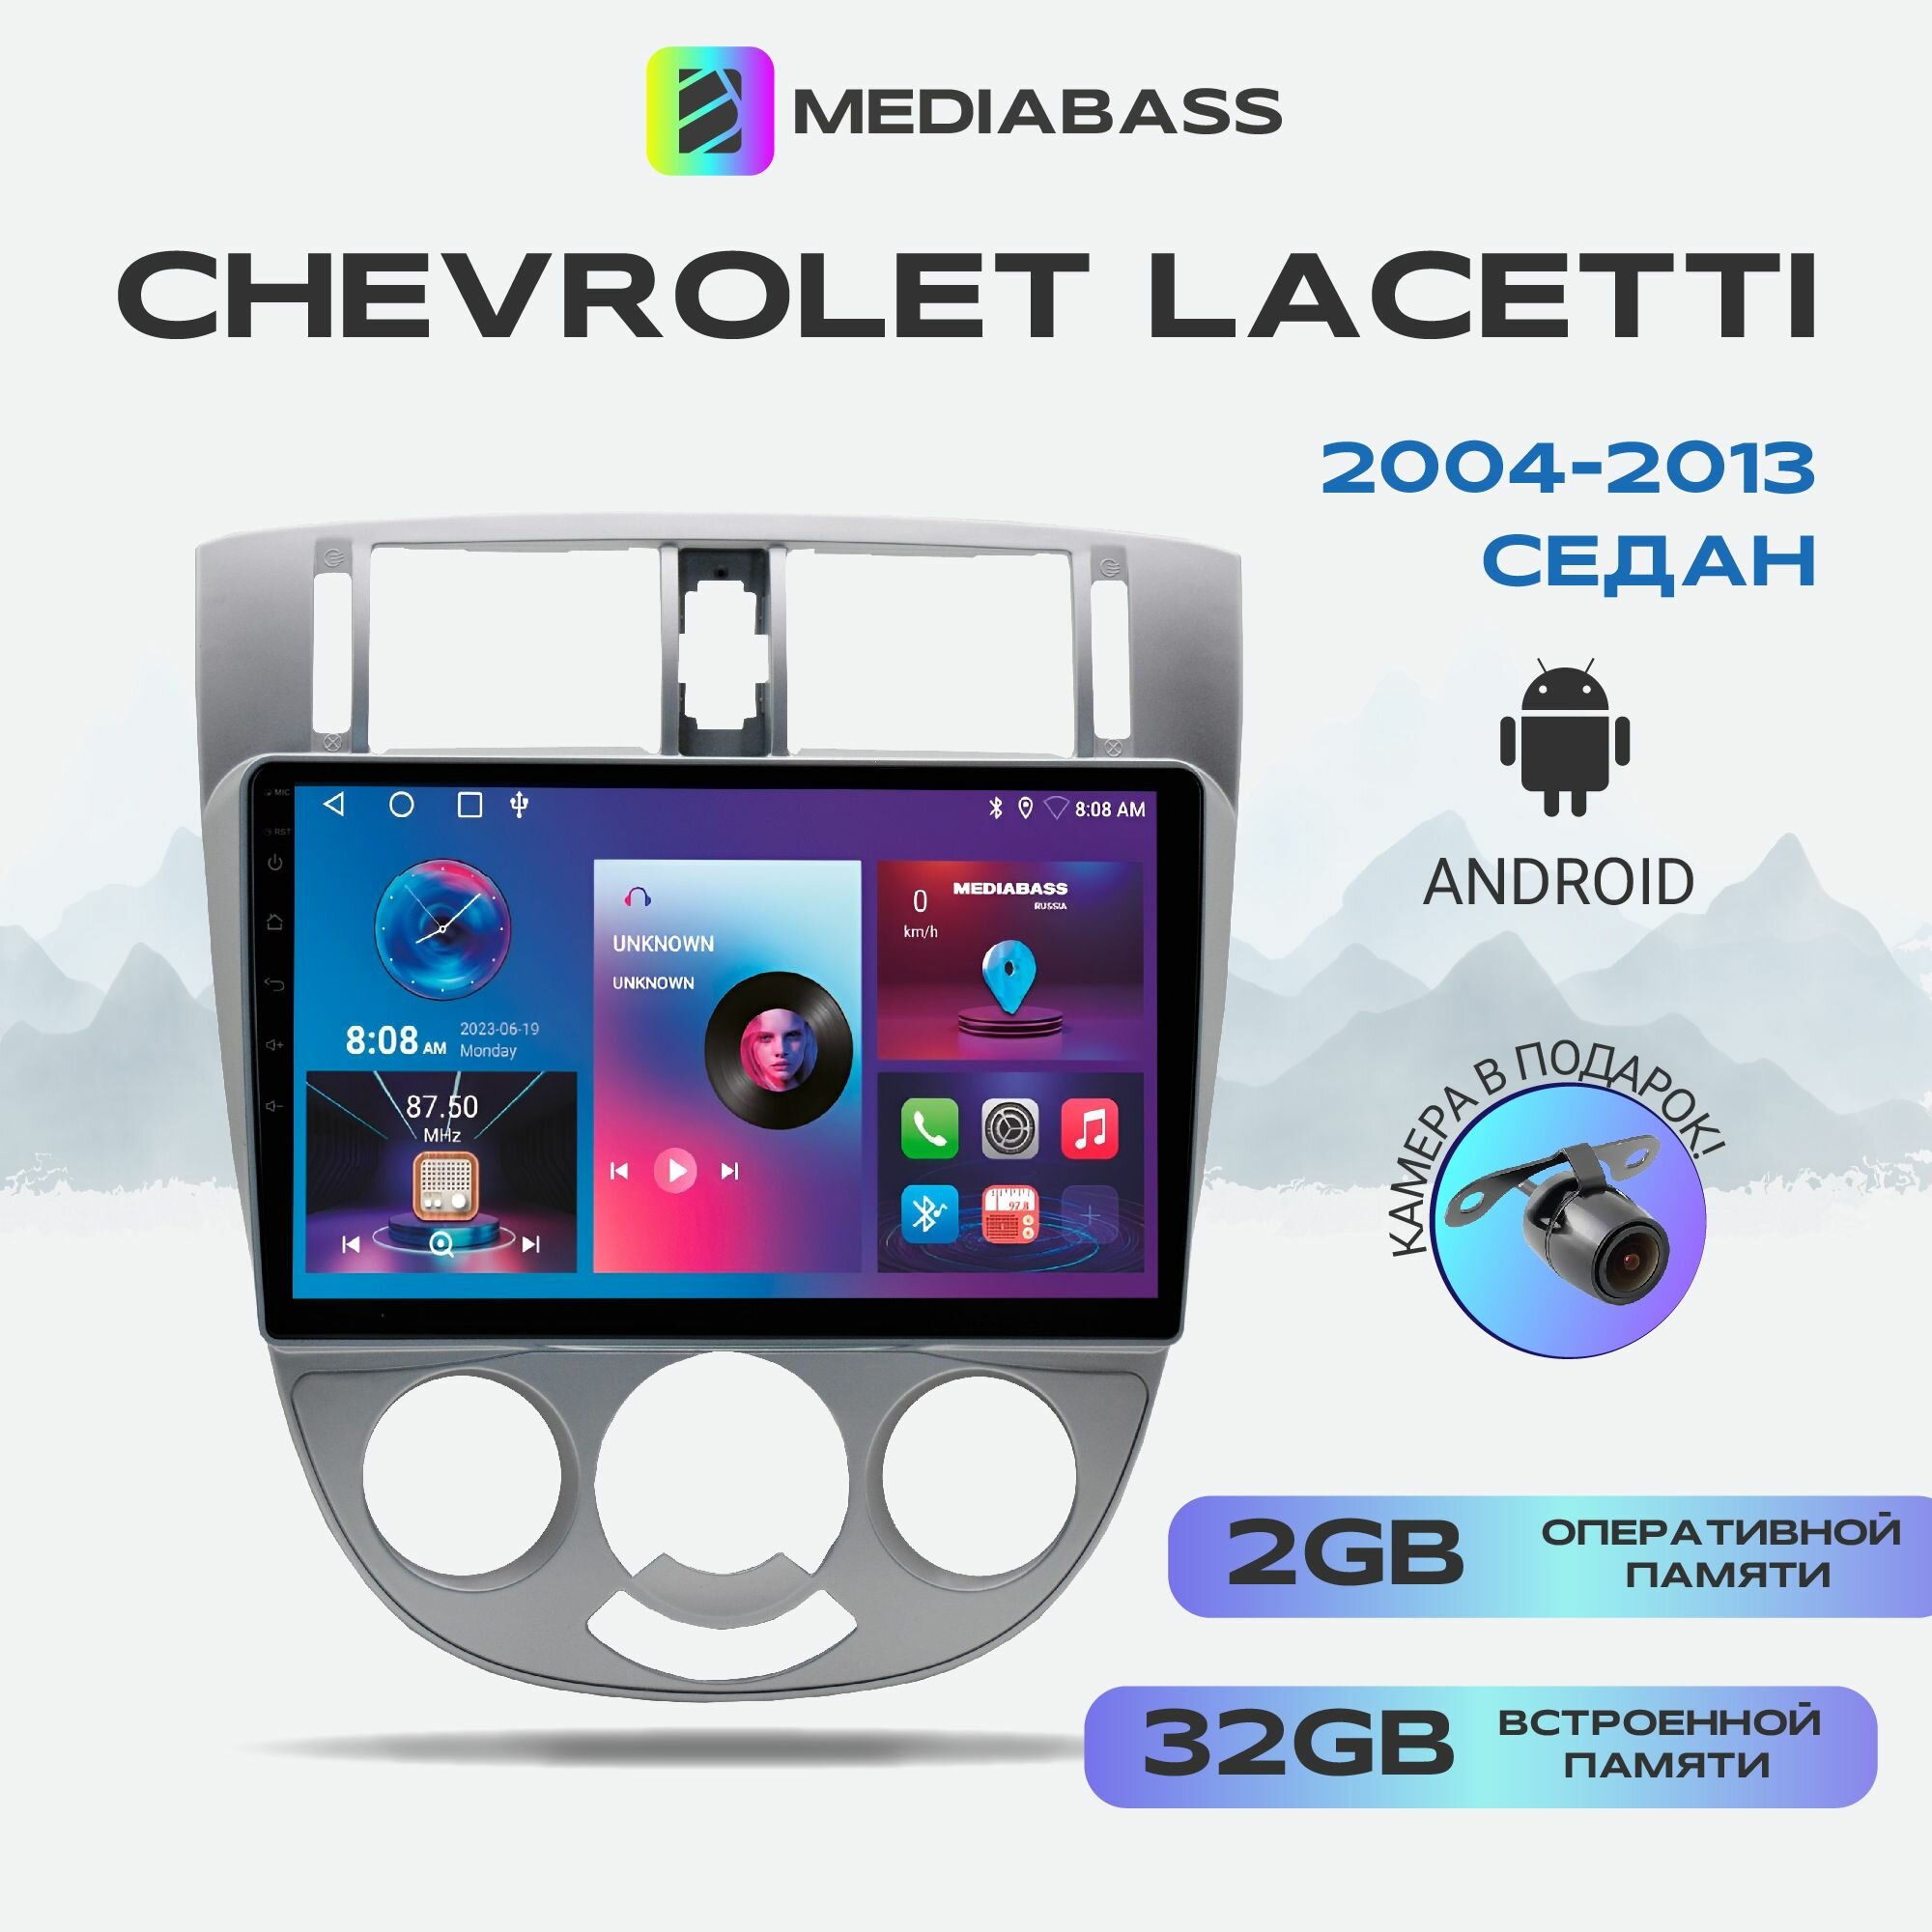 Автомагнитола Mediabass Chevrolet Lacetti седан, 2/32ГБ, 4-ядерный процессор, QLED экран с разрешением 1280*720, чип-усилитель YD7388, Android 12 / Шевроле Лачетти седан